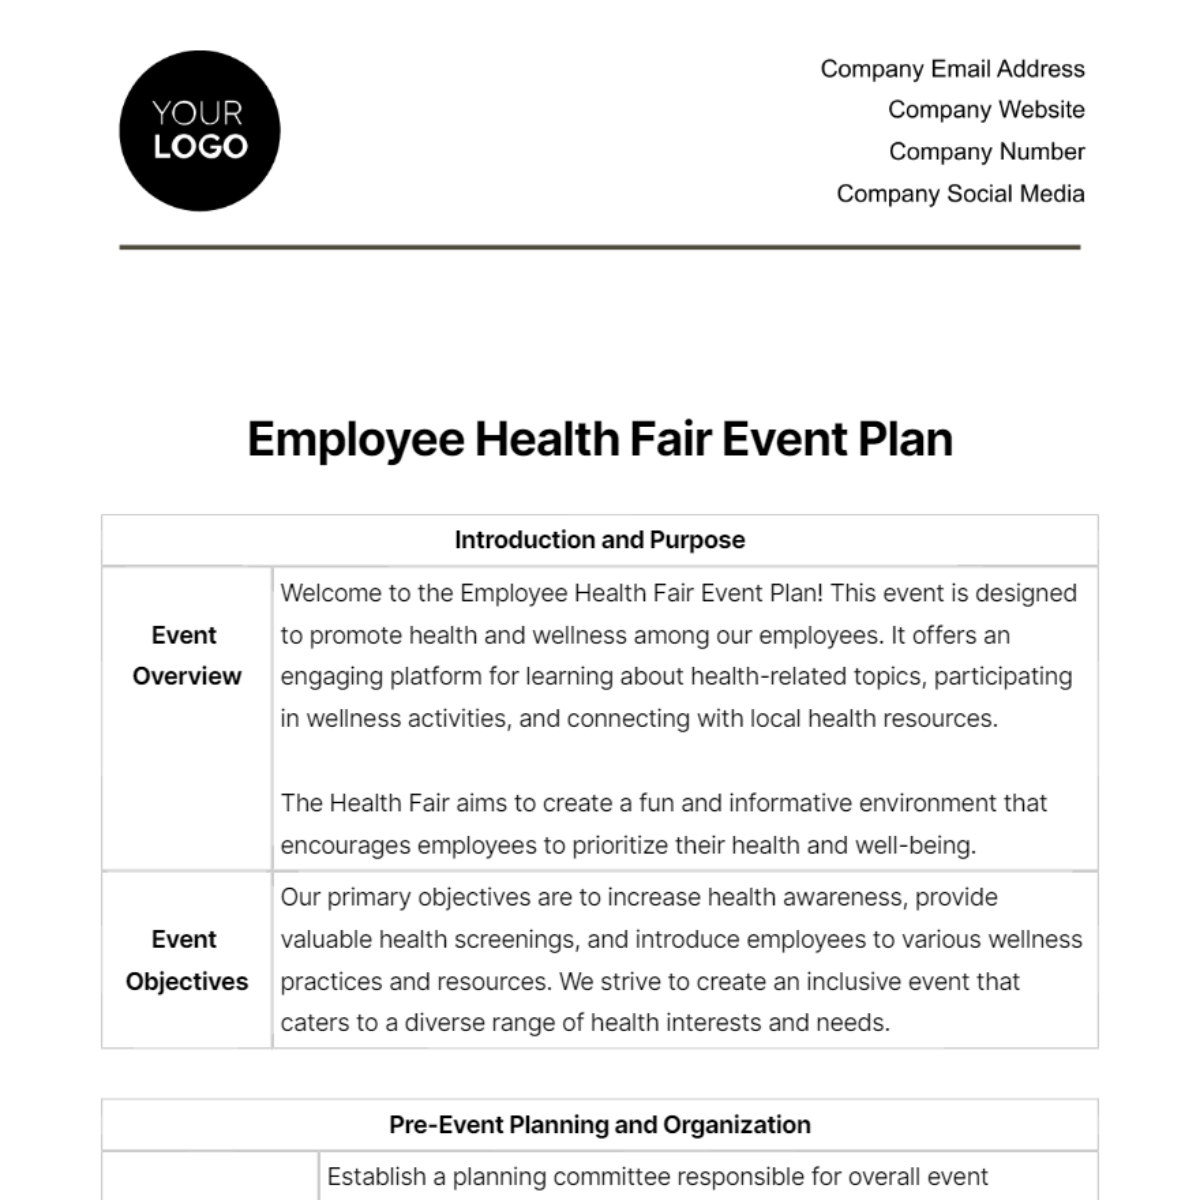 Employee Health Fair Event Plan Template